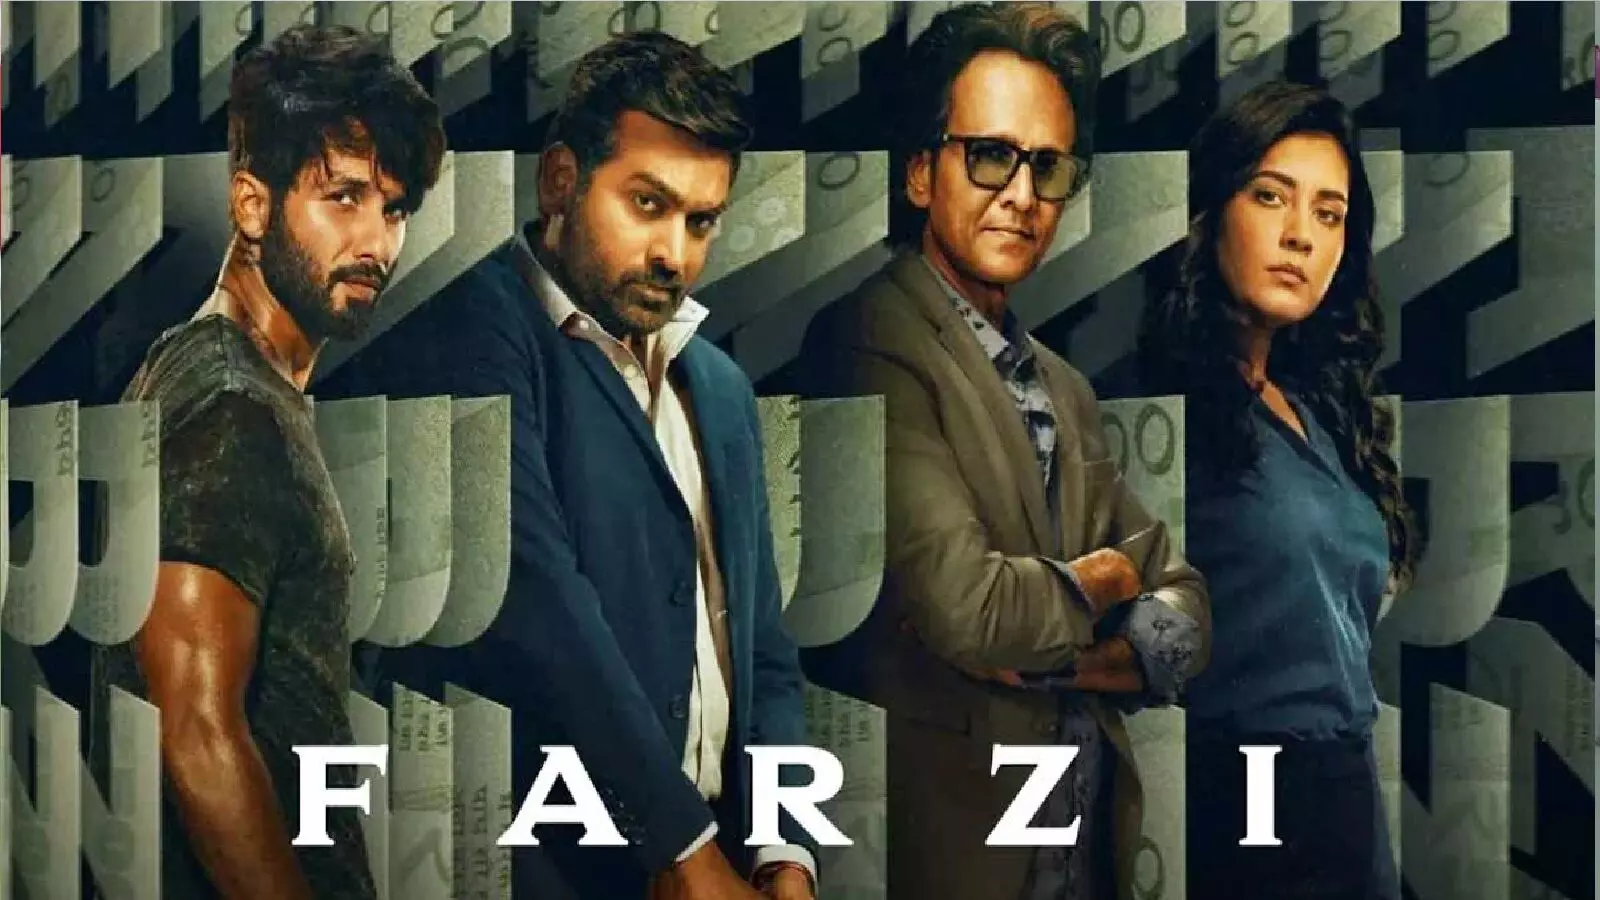 फ़र्ज़ी बनी इंडिया की सबसे पॉपुलर वेब सीरीज! Farzi 2 रिलीज डेट जान लीजिये